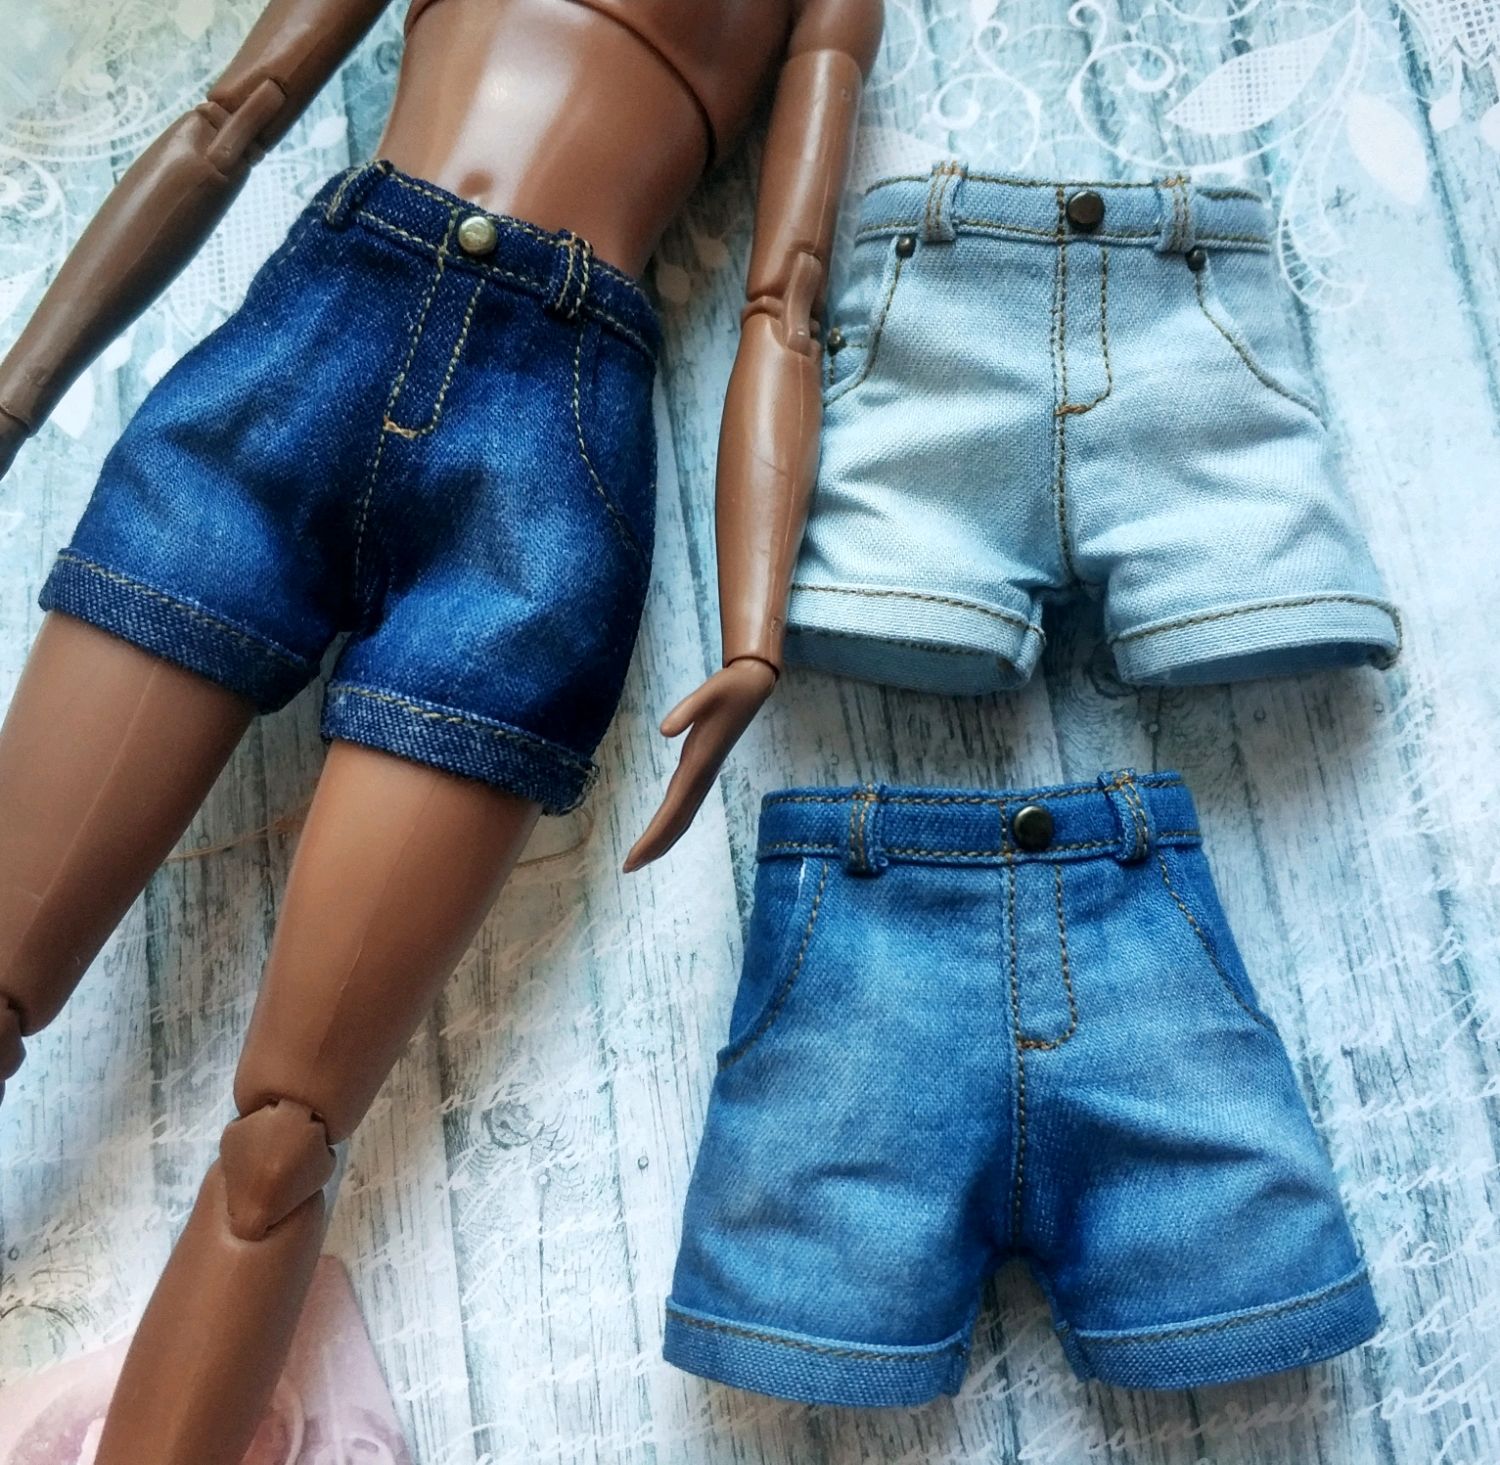 Шорты для куклы. Барби в шортах. Джинсовые шорты для кукол. Шортики для Барби.